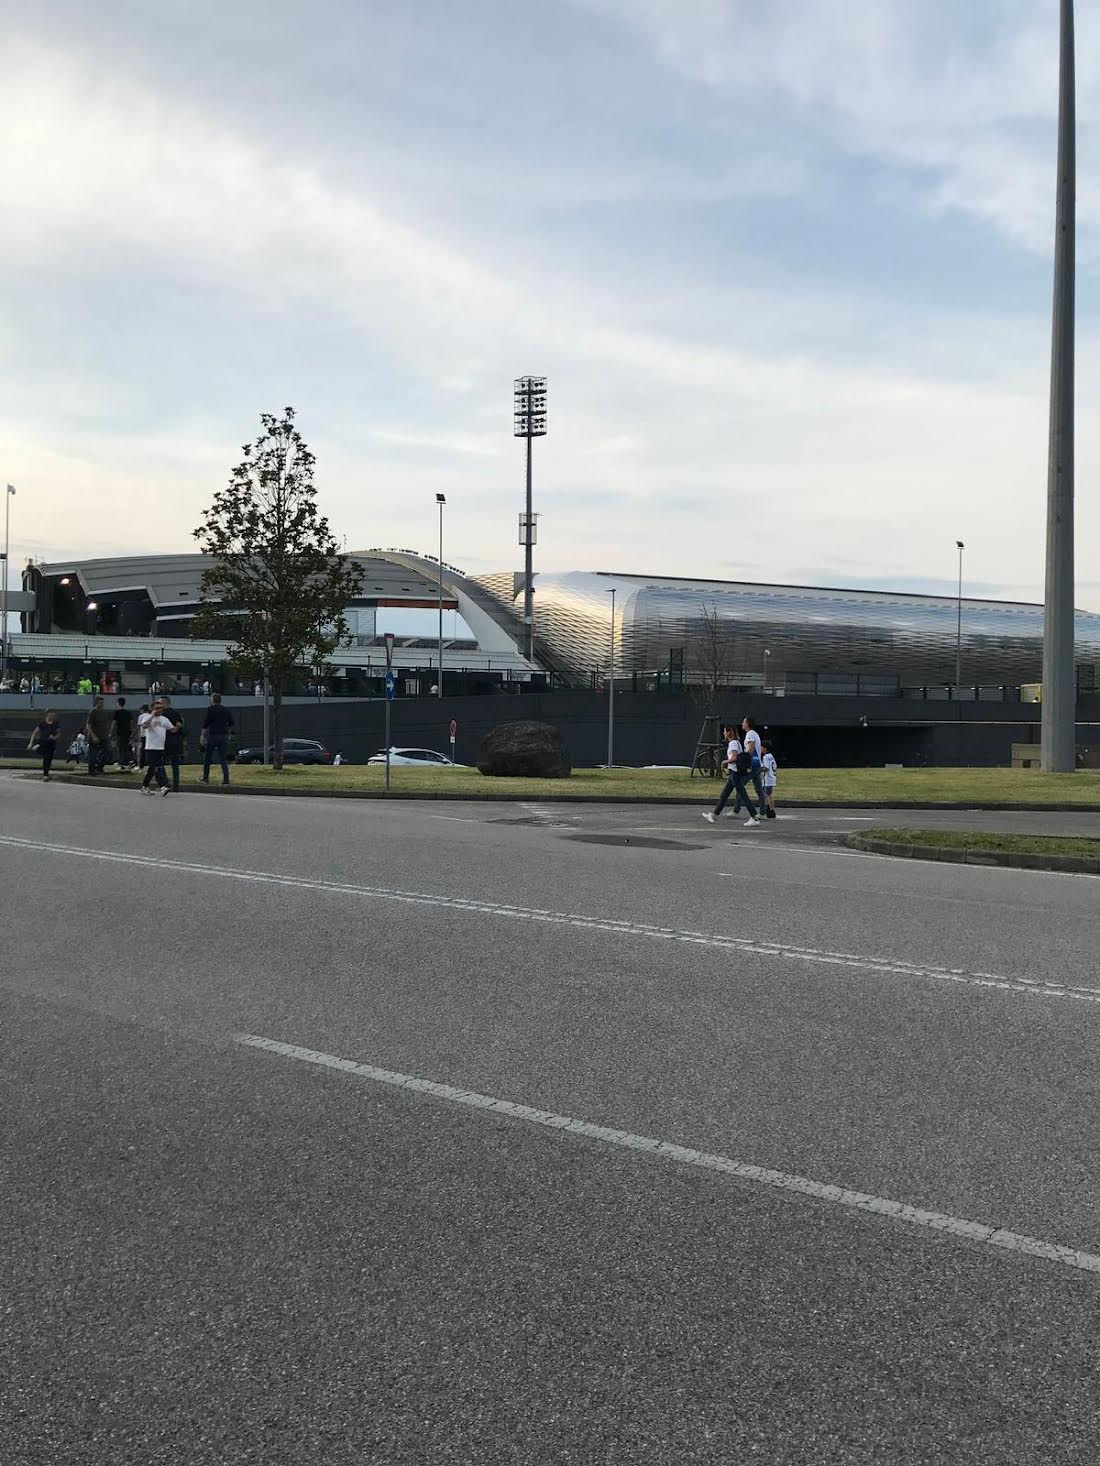 Udinese: pareggio a reti inviolate contro il Frosinone I bianconeri a due punti in classifica dopo tre giornate di campionato